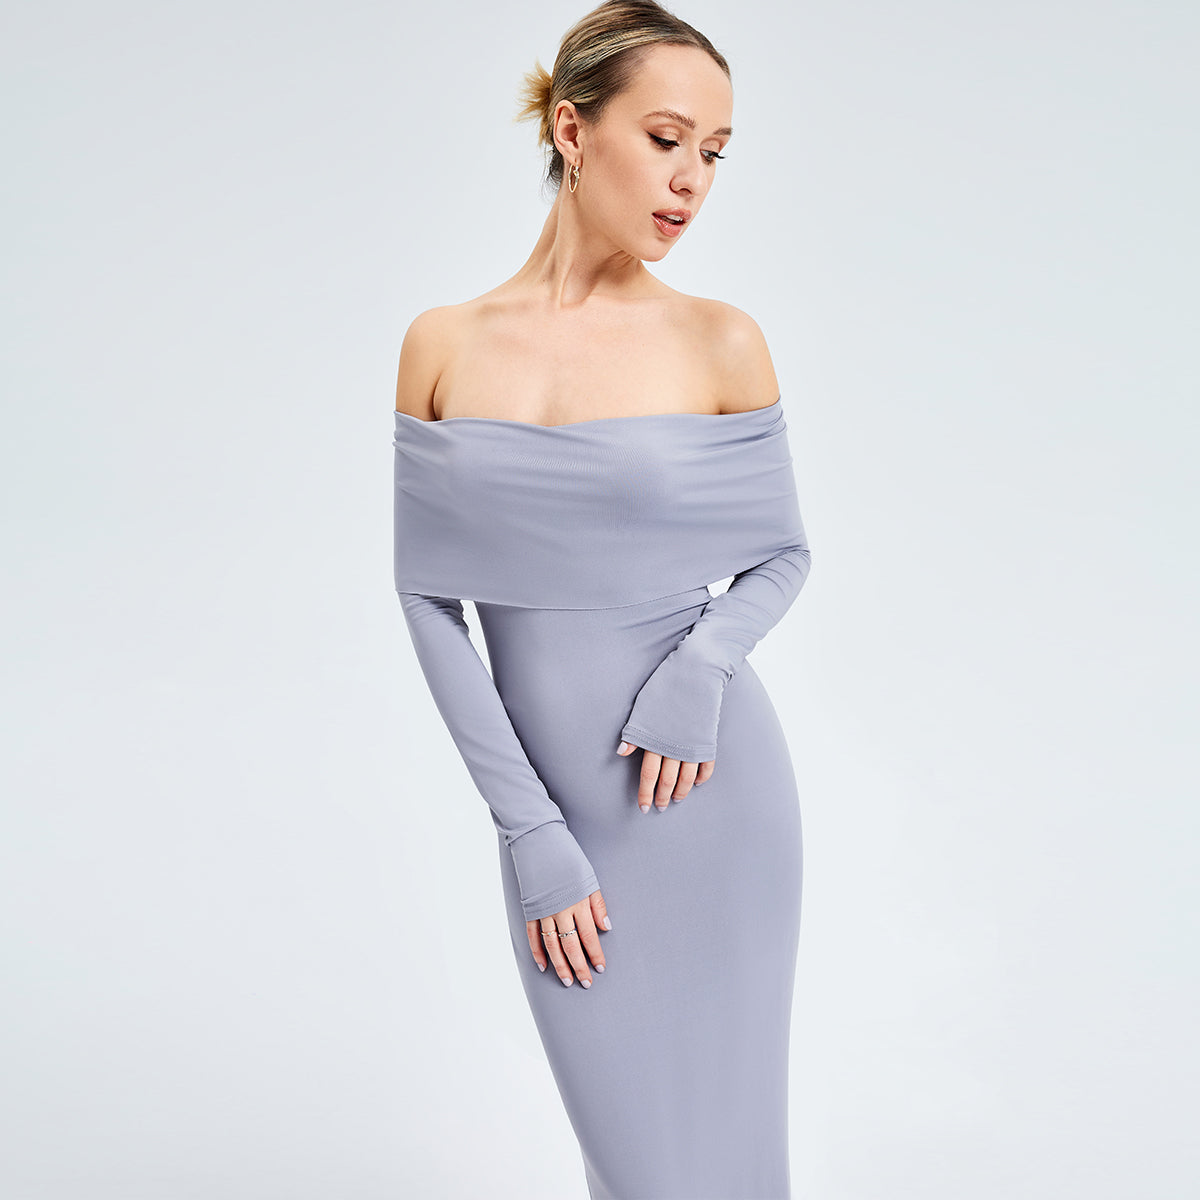 Elegant Off-shoulder Long-sleeved Dress